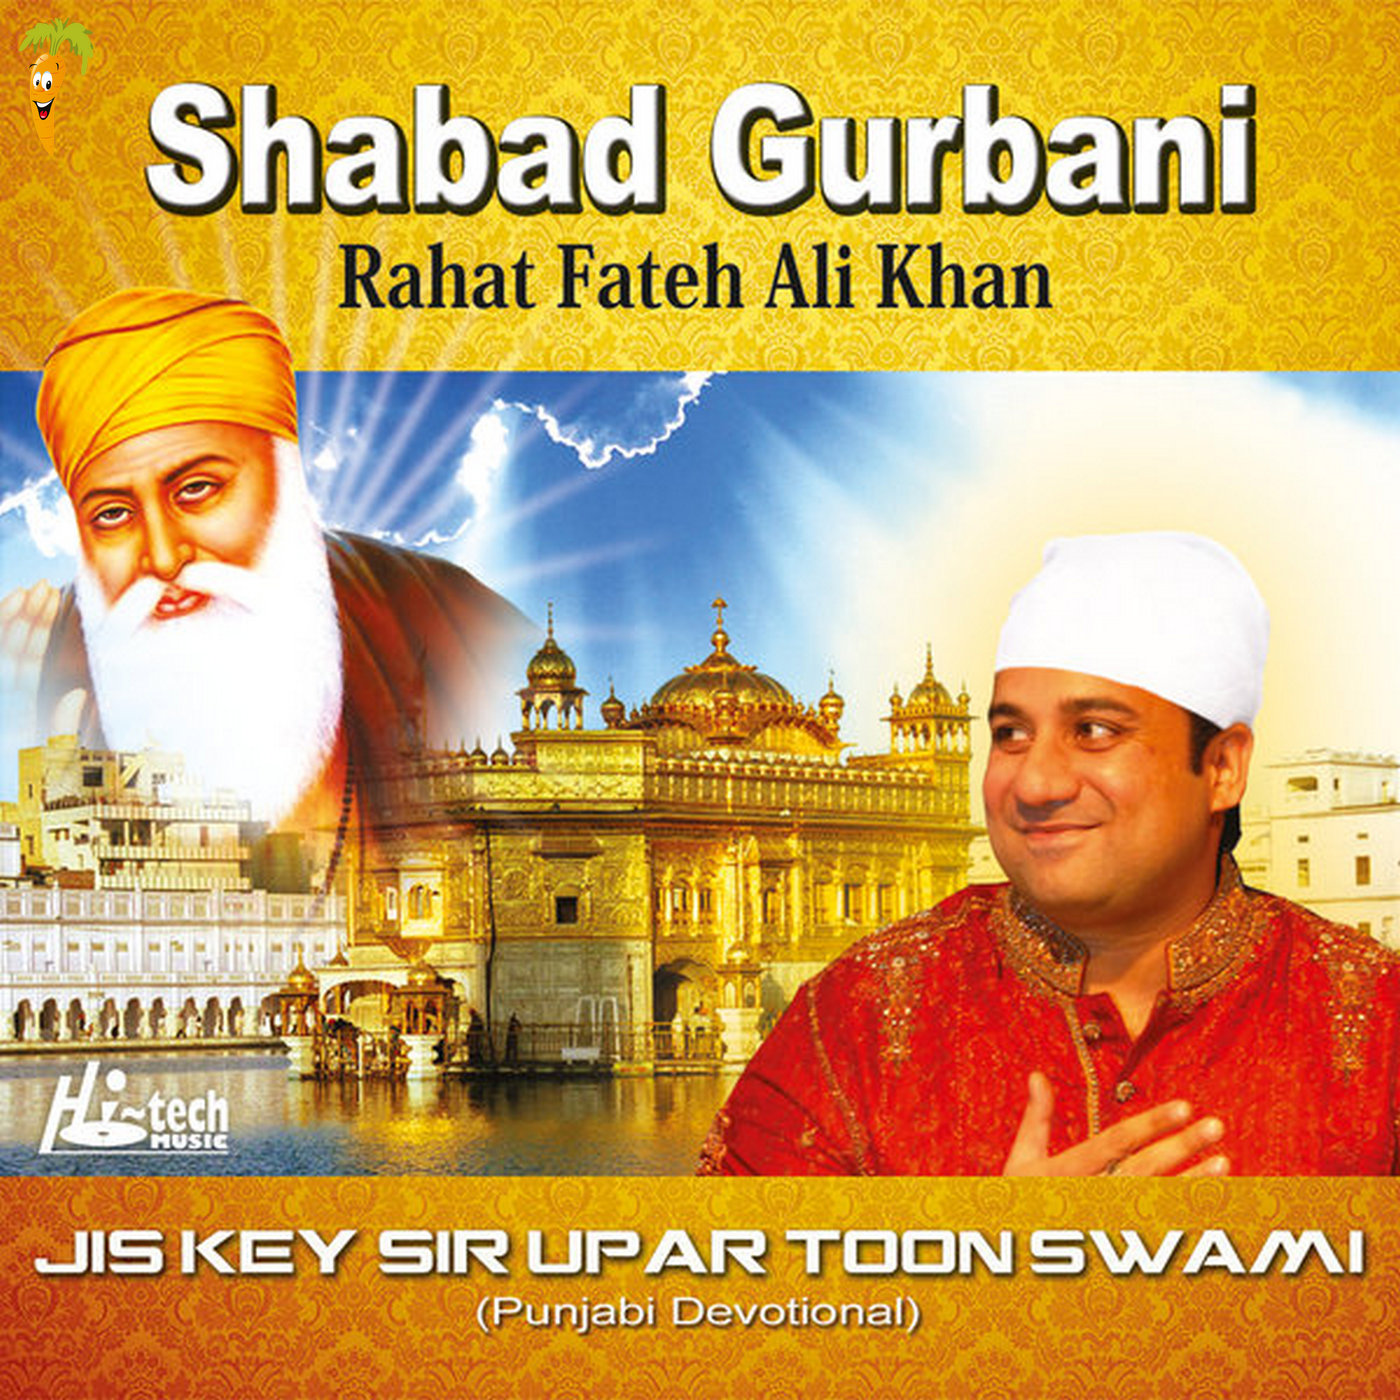 Shabad Gurbani - Jis Key Sir Upar Toon Swami, Vol. 37.jpg